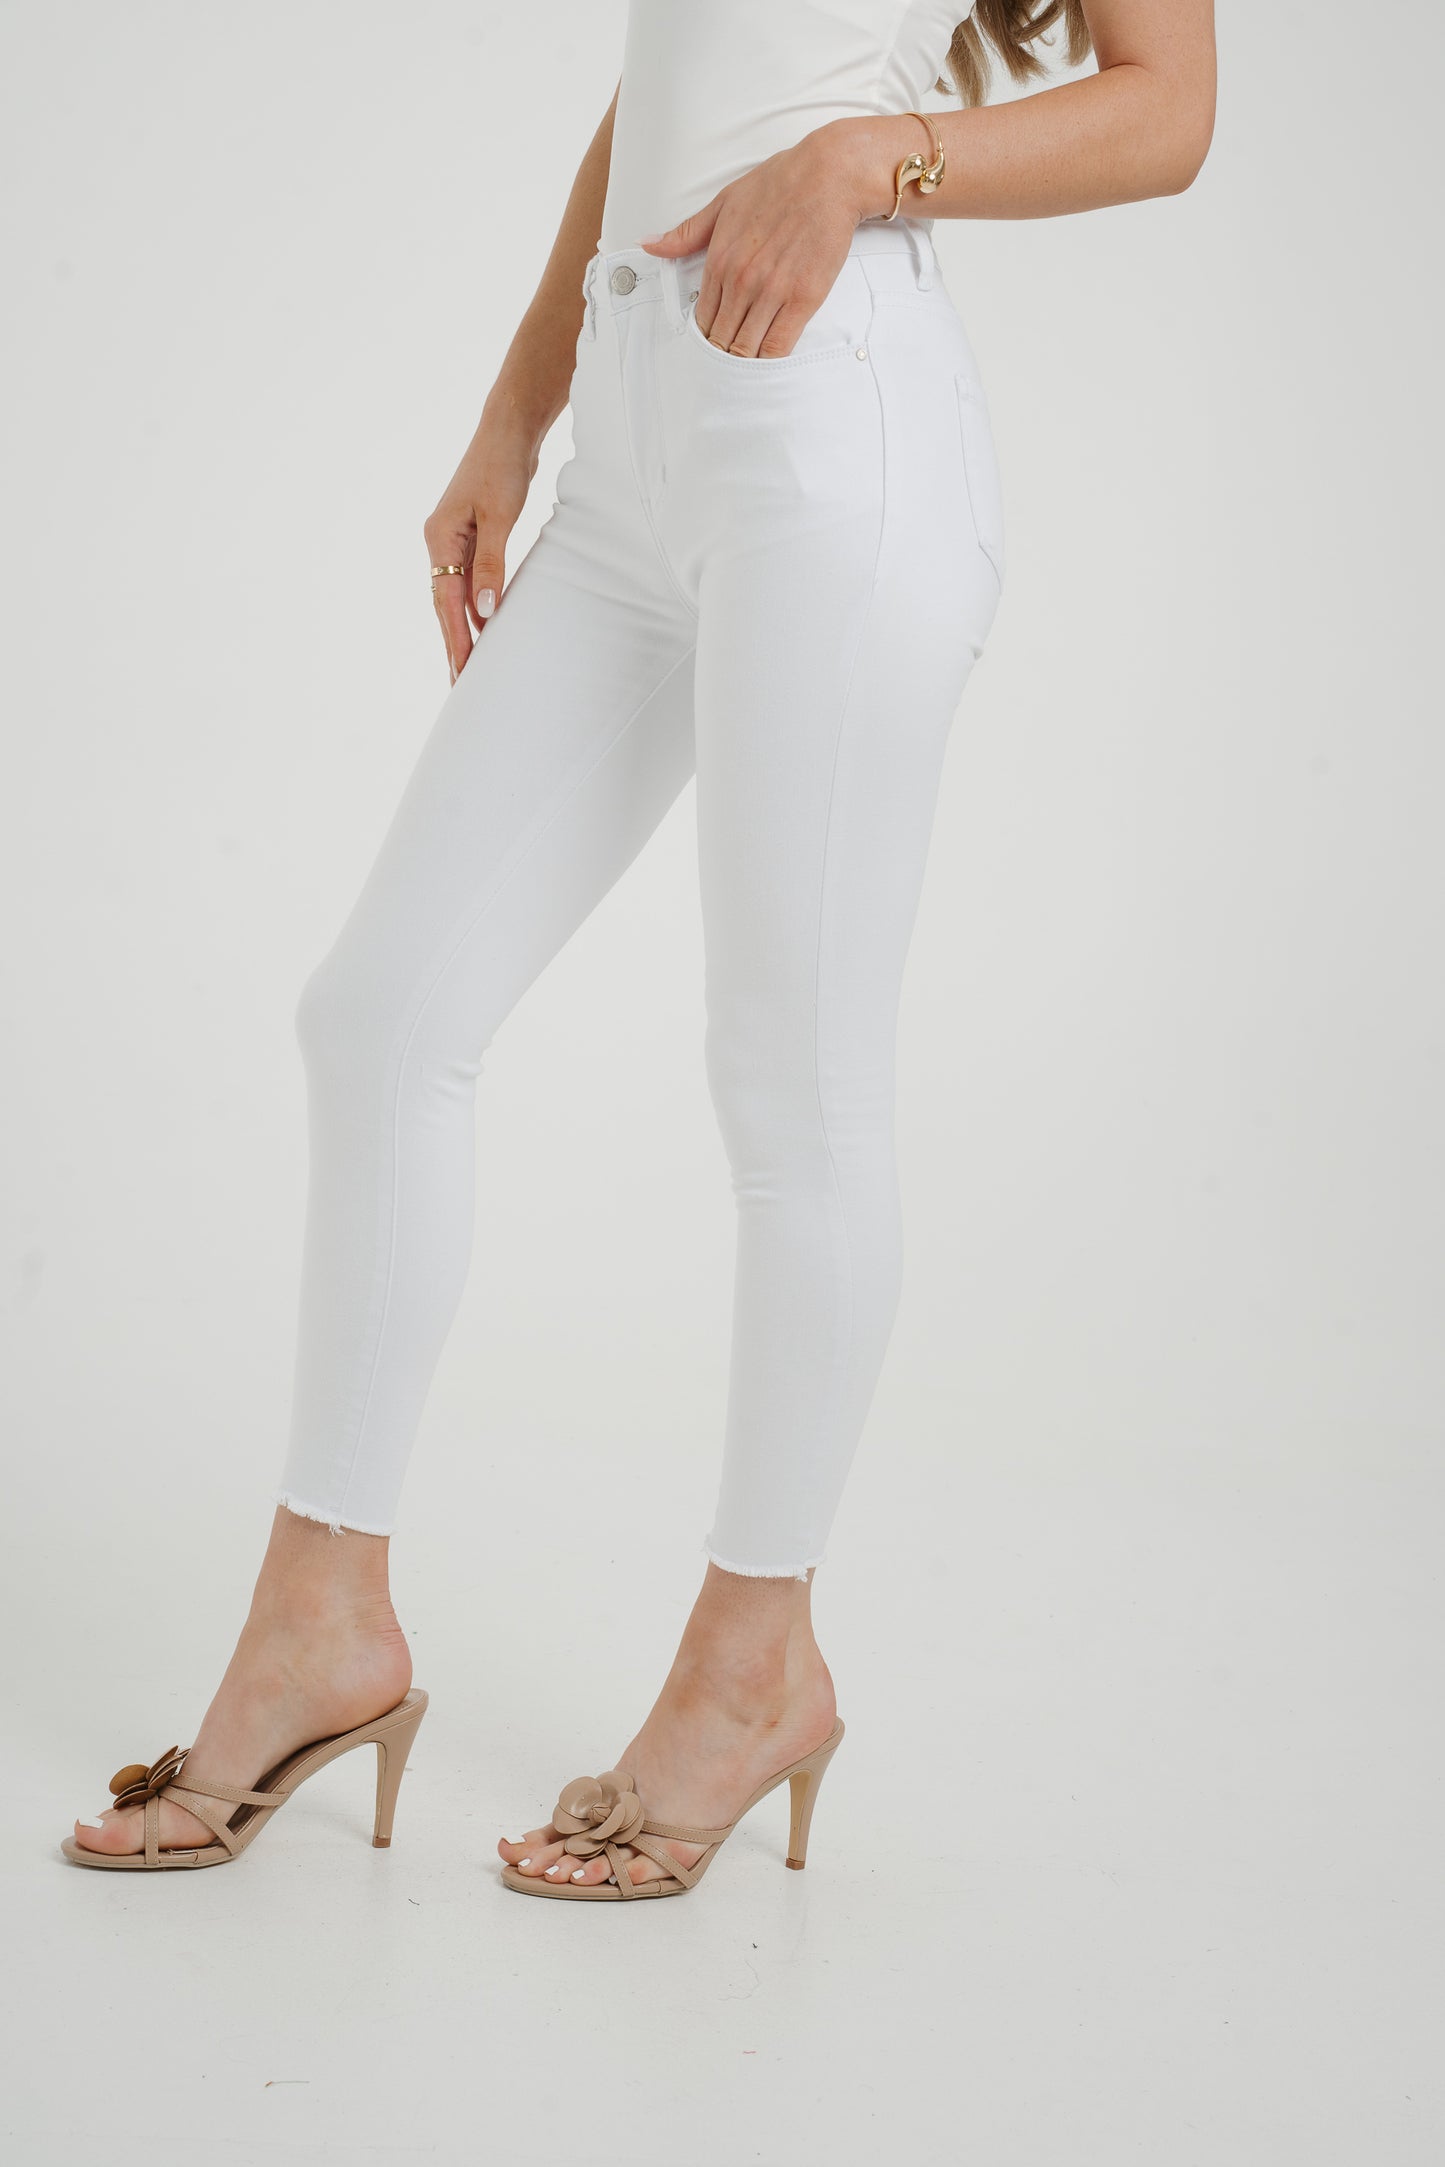 Naomi Skinny Jeans In White